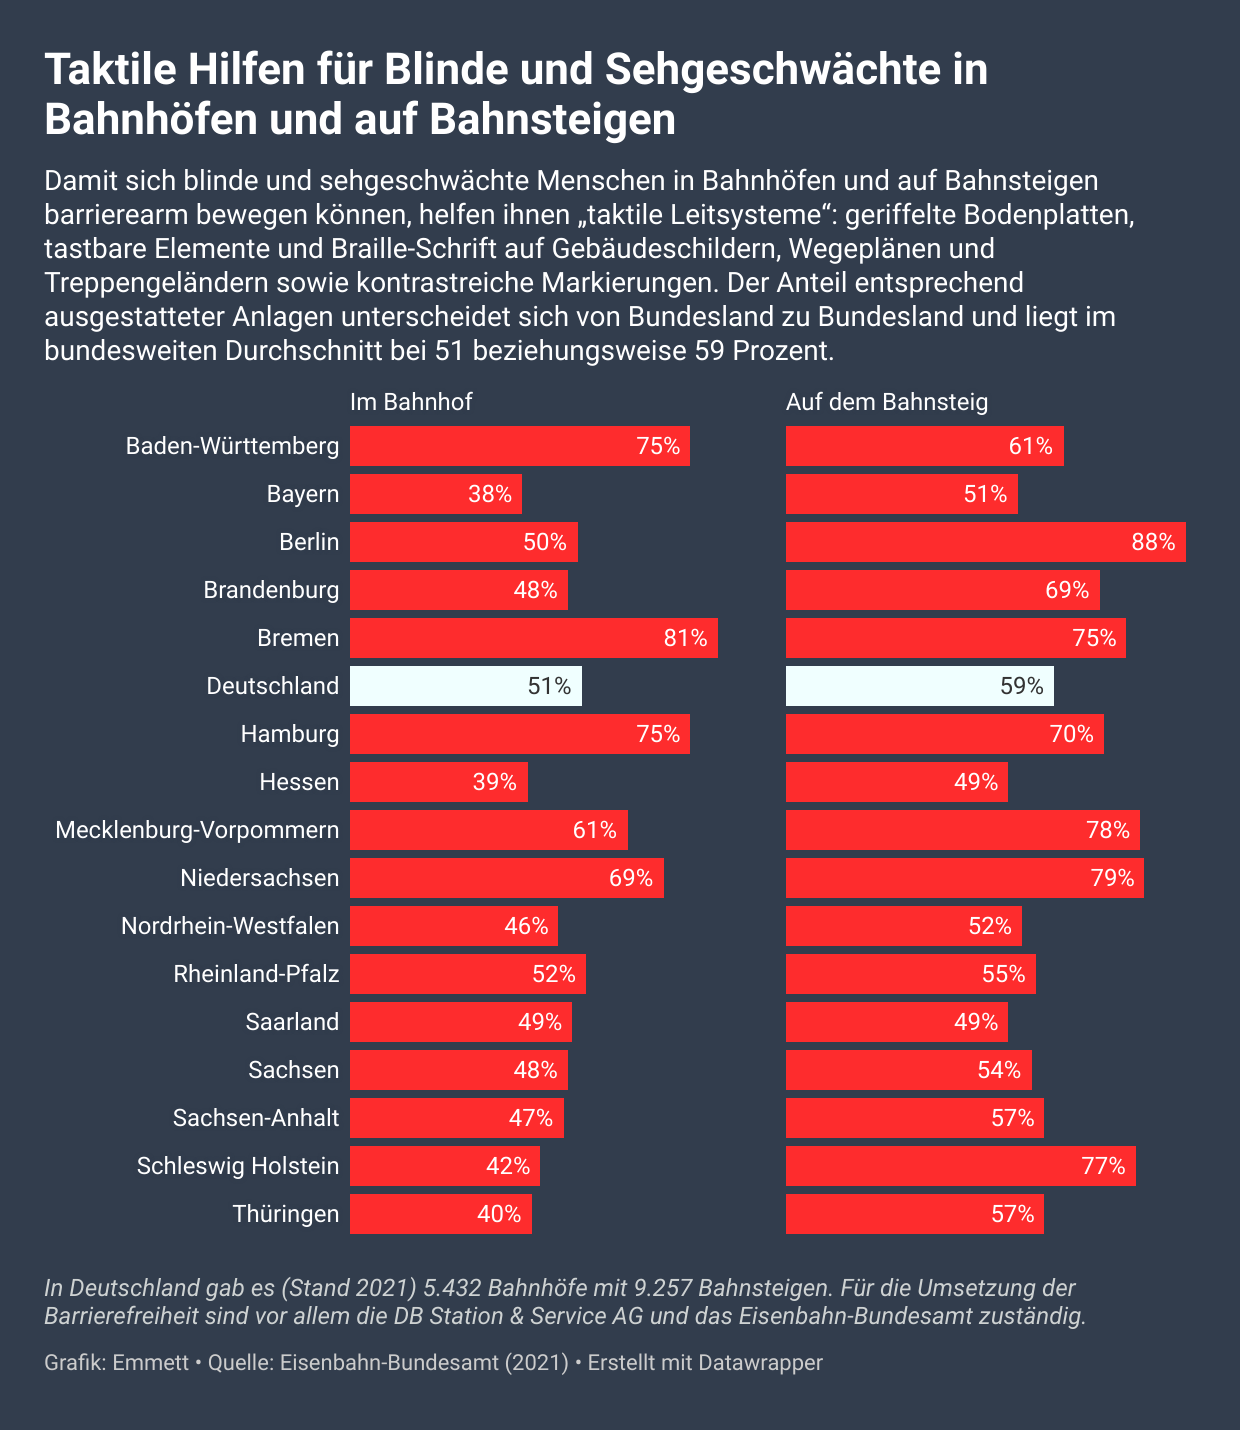 Infografik: In zwei großen Spalten zeigen insgesamt 17 Balken mit ihrer unterschiedlichen Länge für jedes deutsche Bundesland sowie den Durchschnittswert für Deutschland jeweils an, zu wieviel Prozent die dortigen Bahnhöfe mit taktilen Hilfen für Blinde und Sehgeschwächte ausgestattet sind. In Deutschland sind es 51 im Bahnhofsgebäude und 59 Prozent auf den Bahnsteigen